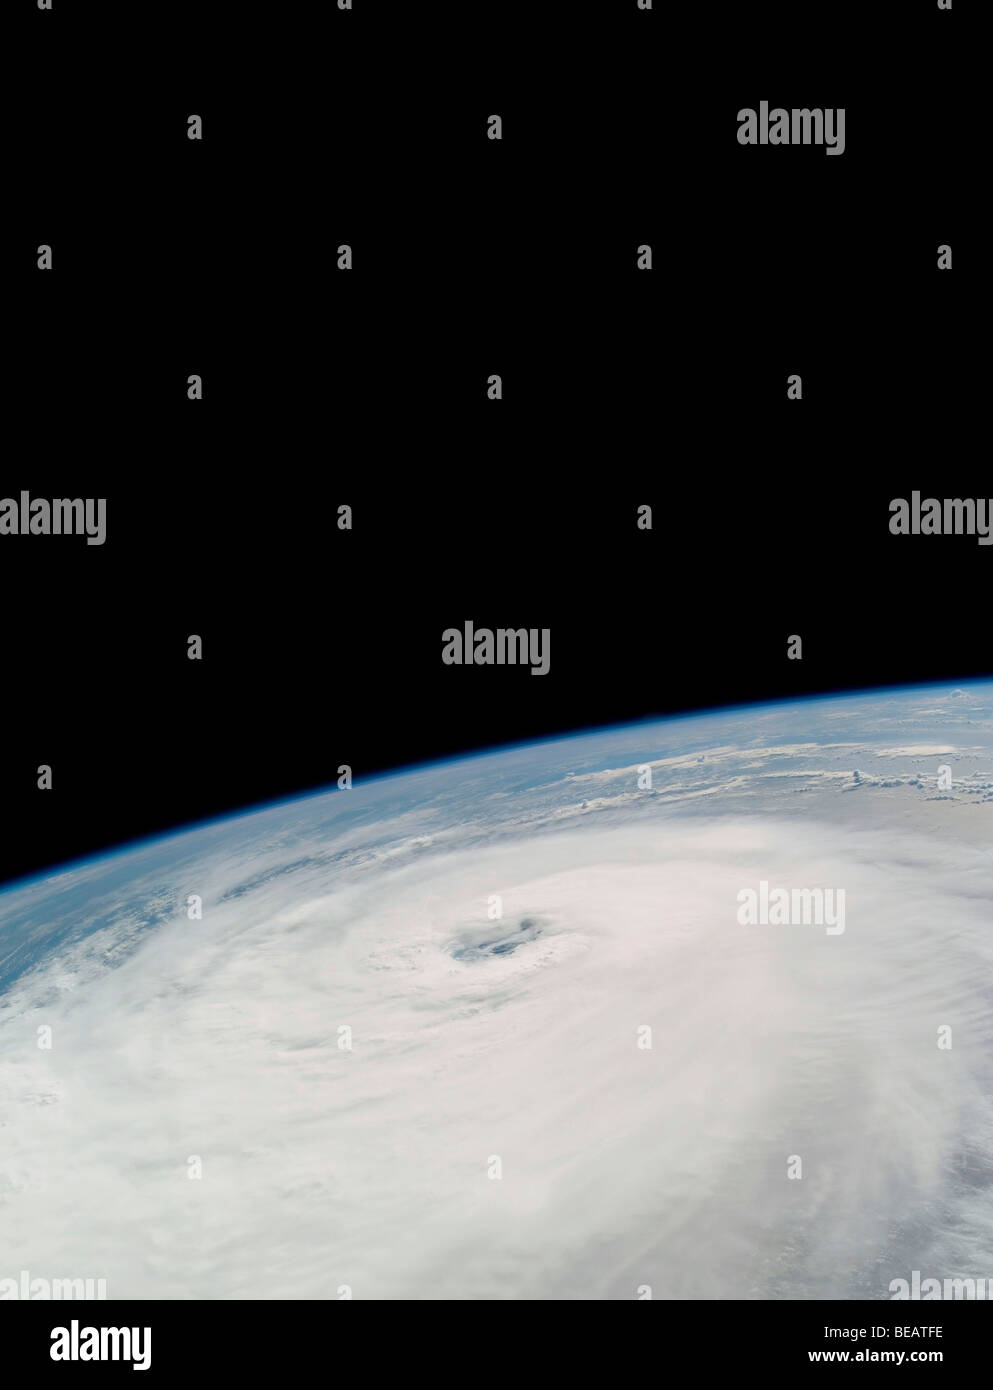 Uragano Helene Sett 2006 fotografata da lo Space Shuttle Atlantis. Versione ottimizzata di originale immagine della NASA. Credit NASA Foto Stock